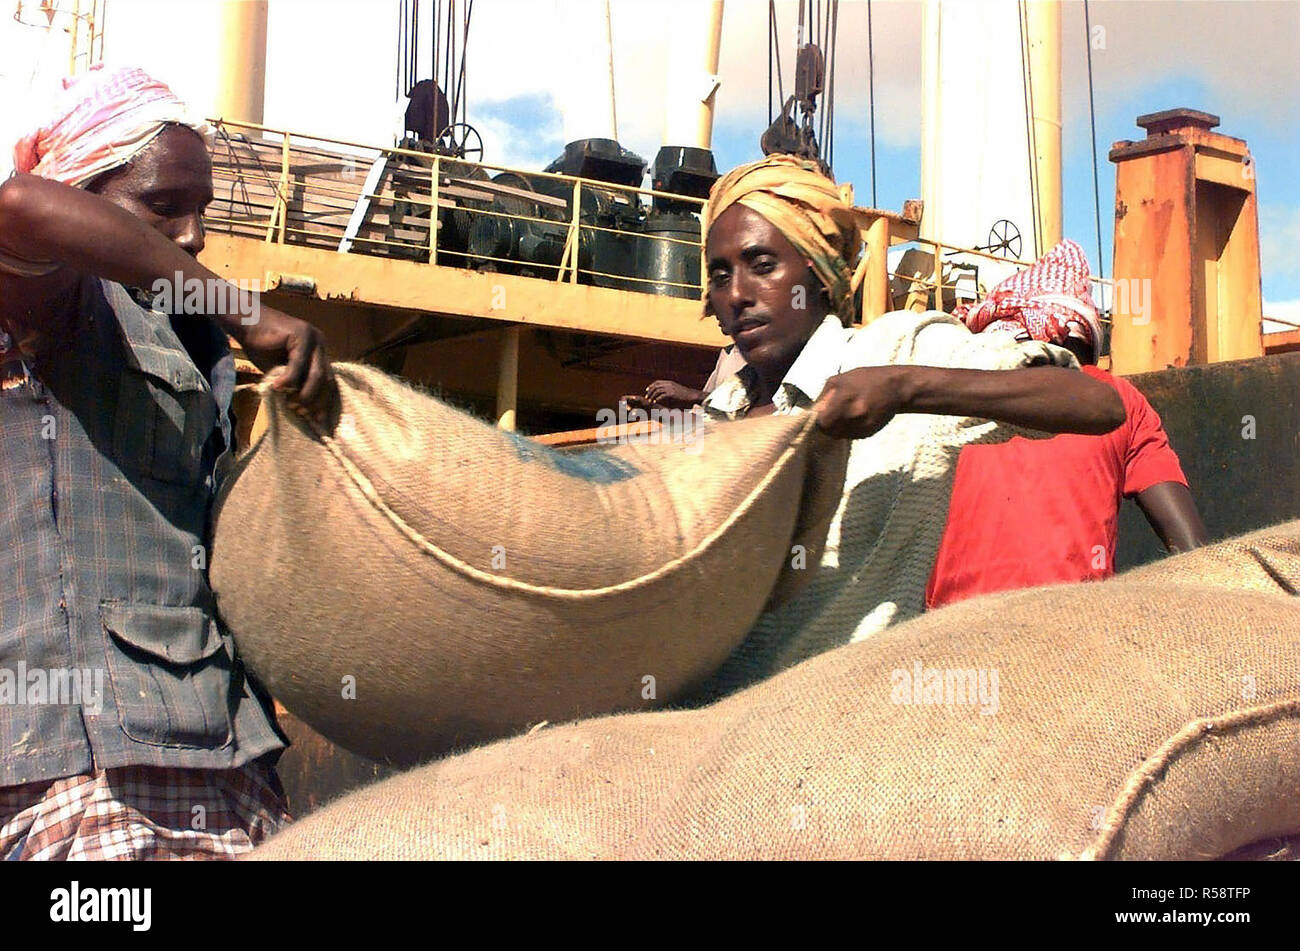 1993 - lavoratori Somali scarico di una nave che trasporta i sacchi di grano donati dalle Comunità europee sul porto di Mogadiscio, Somalia. Questa missione è a sostegno dell'operazione Restore Hope. Foto Stock